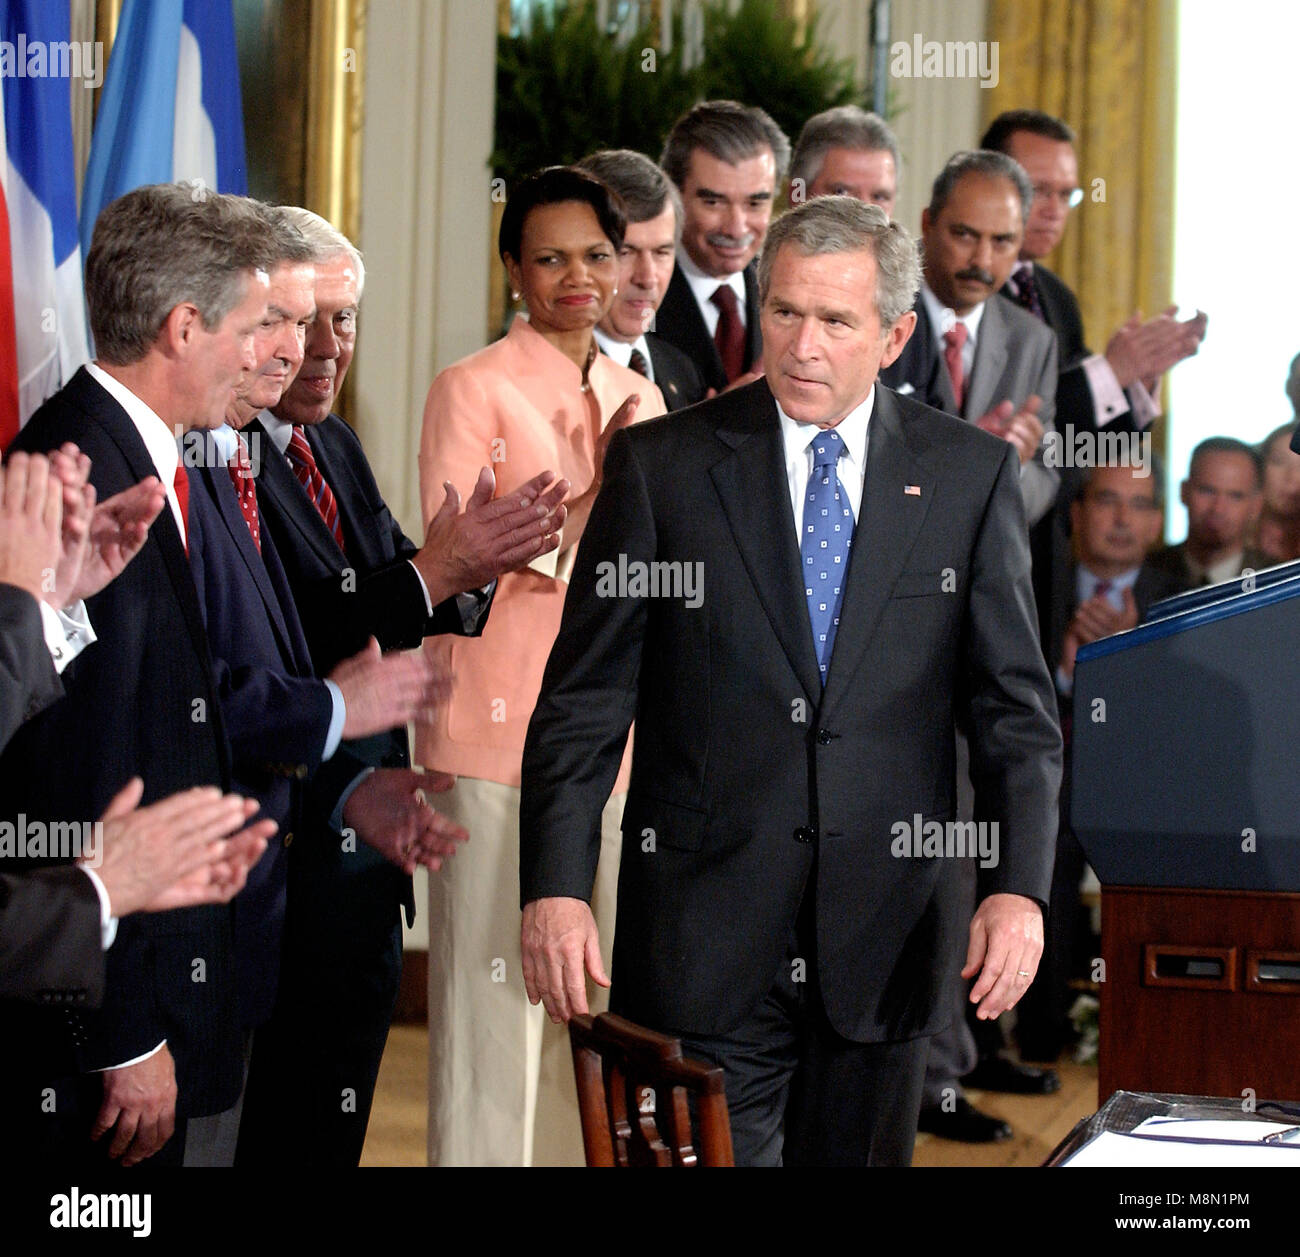 Washington, D.C. - 2 août 2005 -- Le président des États-Unis George W. Bush se prépare à signer l'Accord de libre-échange avec l'Amérique centrale (CAFTA) après des propos au cours d'une cérémonie dans la East Room de la Maison Blanche à Washington, D.C. le 2 août 2005. L'accord, entre les États-Unis et le Costa Rica, El Salvador, Guatemala, Honduras, Nicaragua et la République dominicaine, supprime les obstacles au commerce et ouvre de la région pour les biens et services. Il se déplace également pour faciliter l'investissement dans la région et renforce la protection de la propriété intellectuelle. Il a à peine passé la chambre Banque D'Images